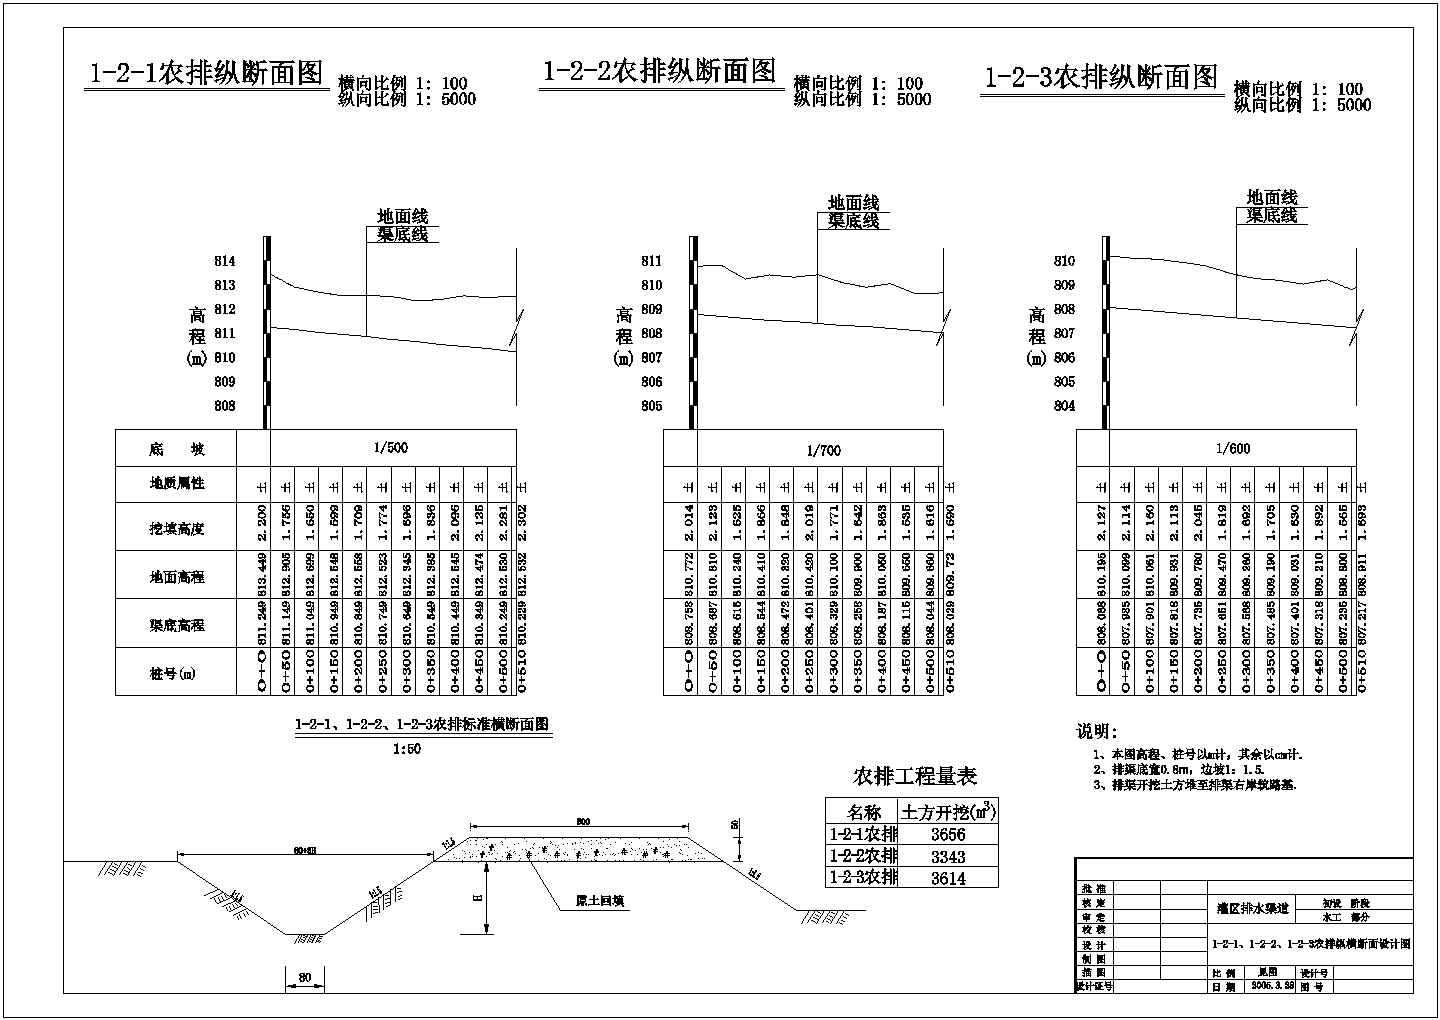 【南京】六合区某农村全套农田水利灌溉初设cad图纸(含六斗排纵横断面设计图)